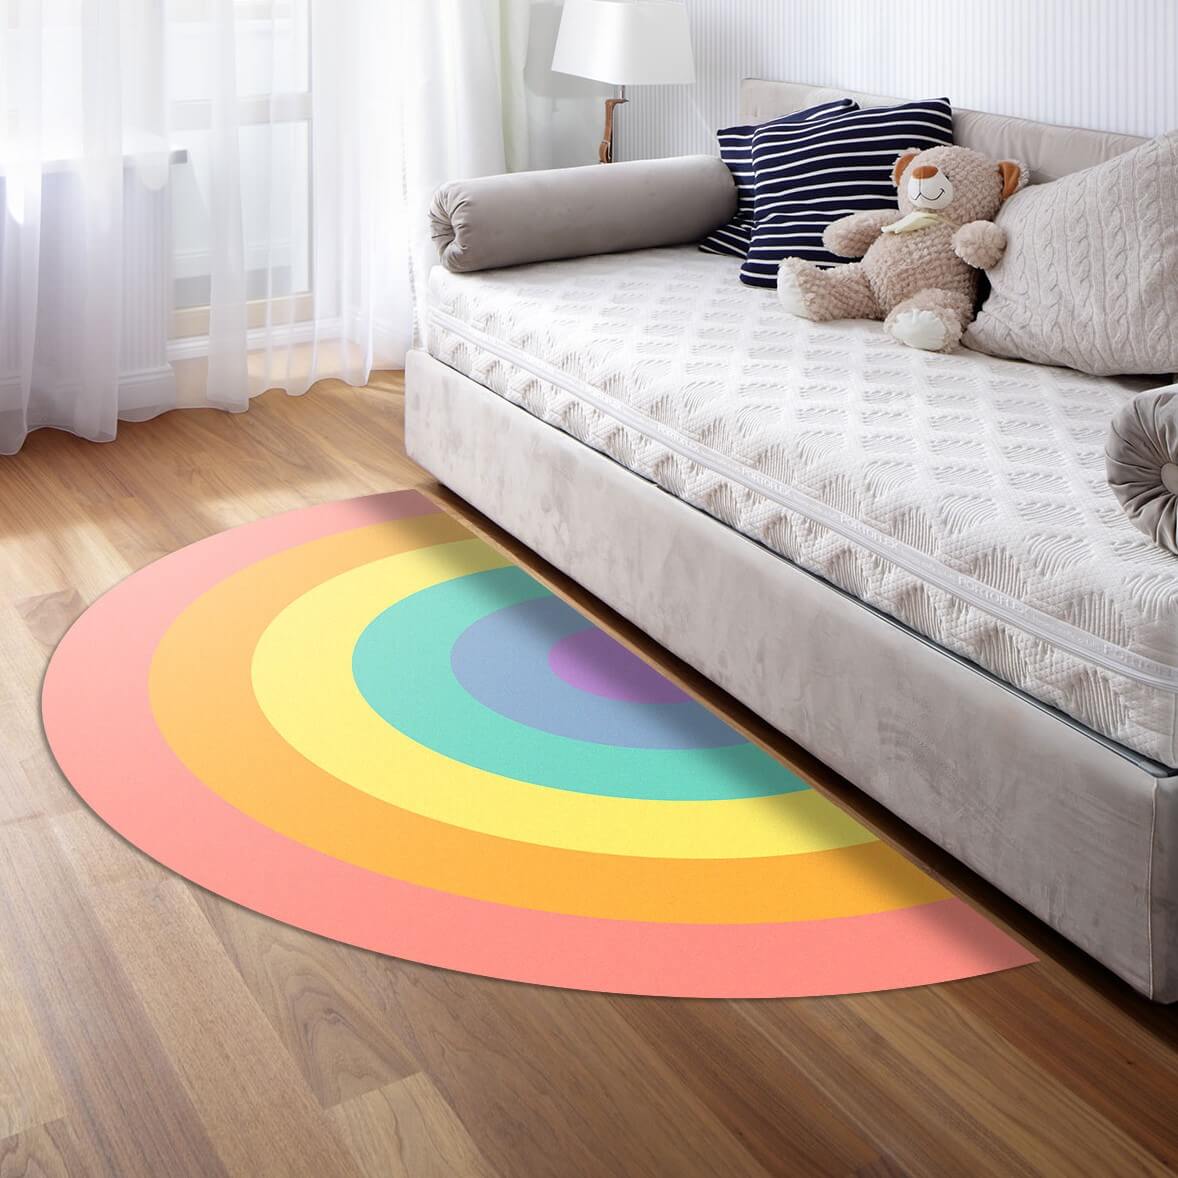 שטיח לחדר ילדים צבעי הקשת 